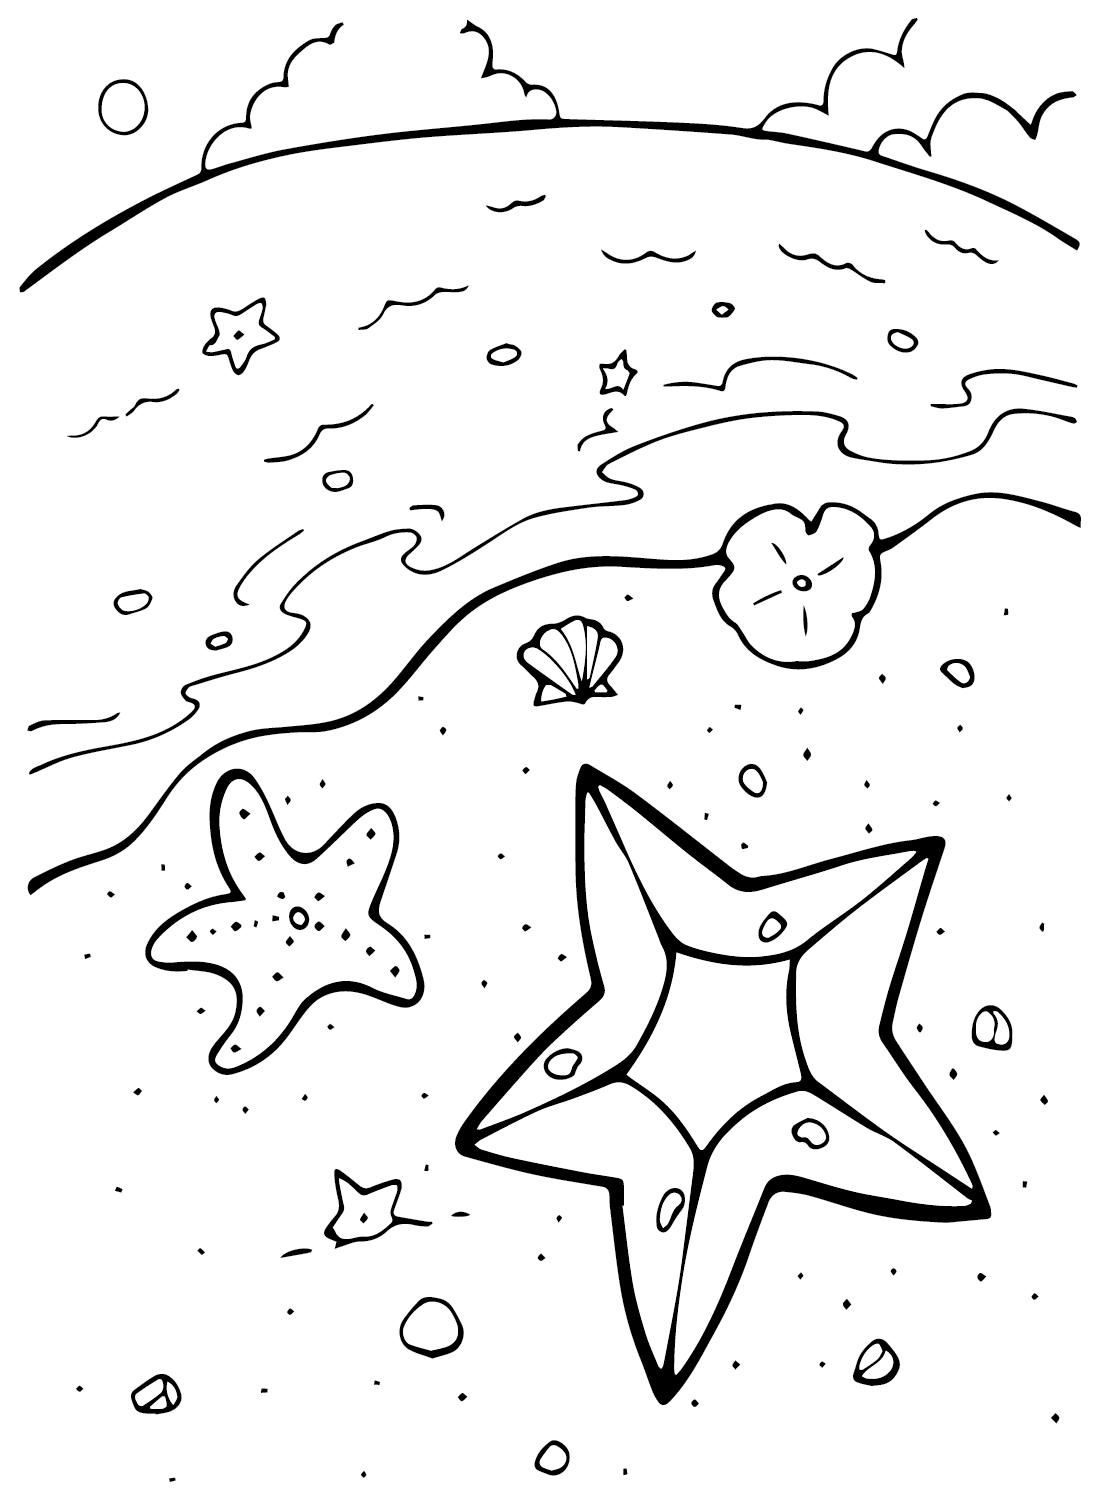 Starfish Drawing from Starfish